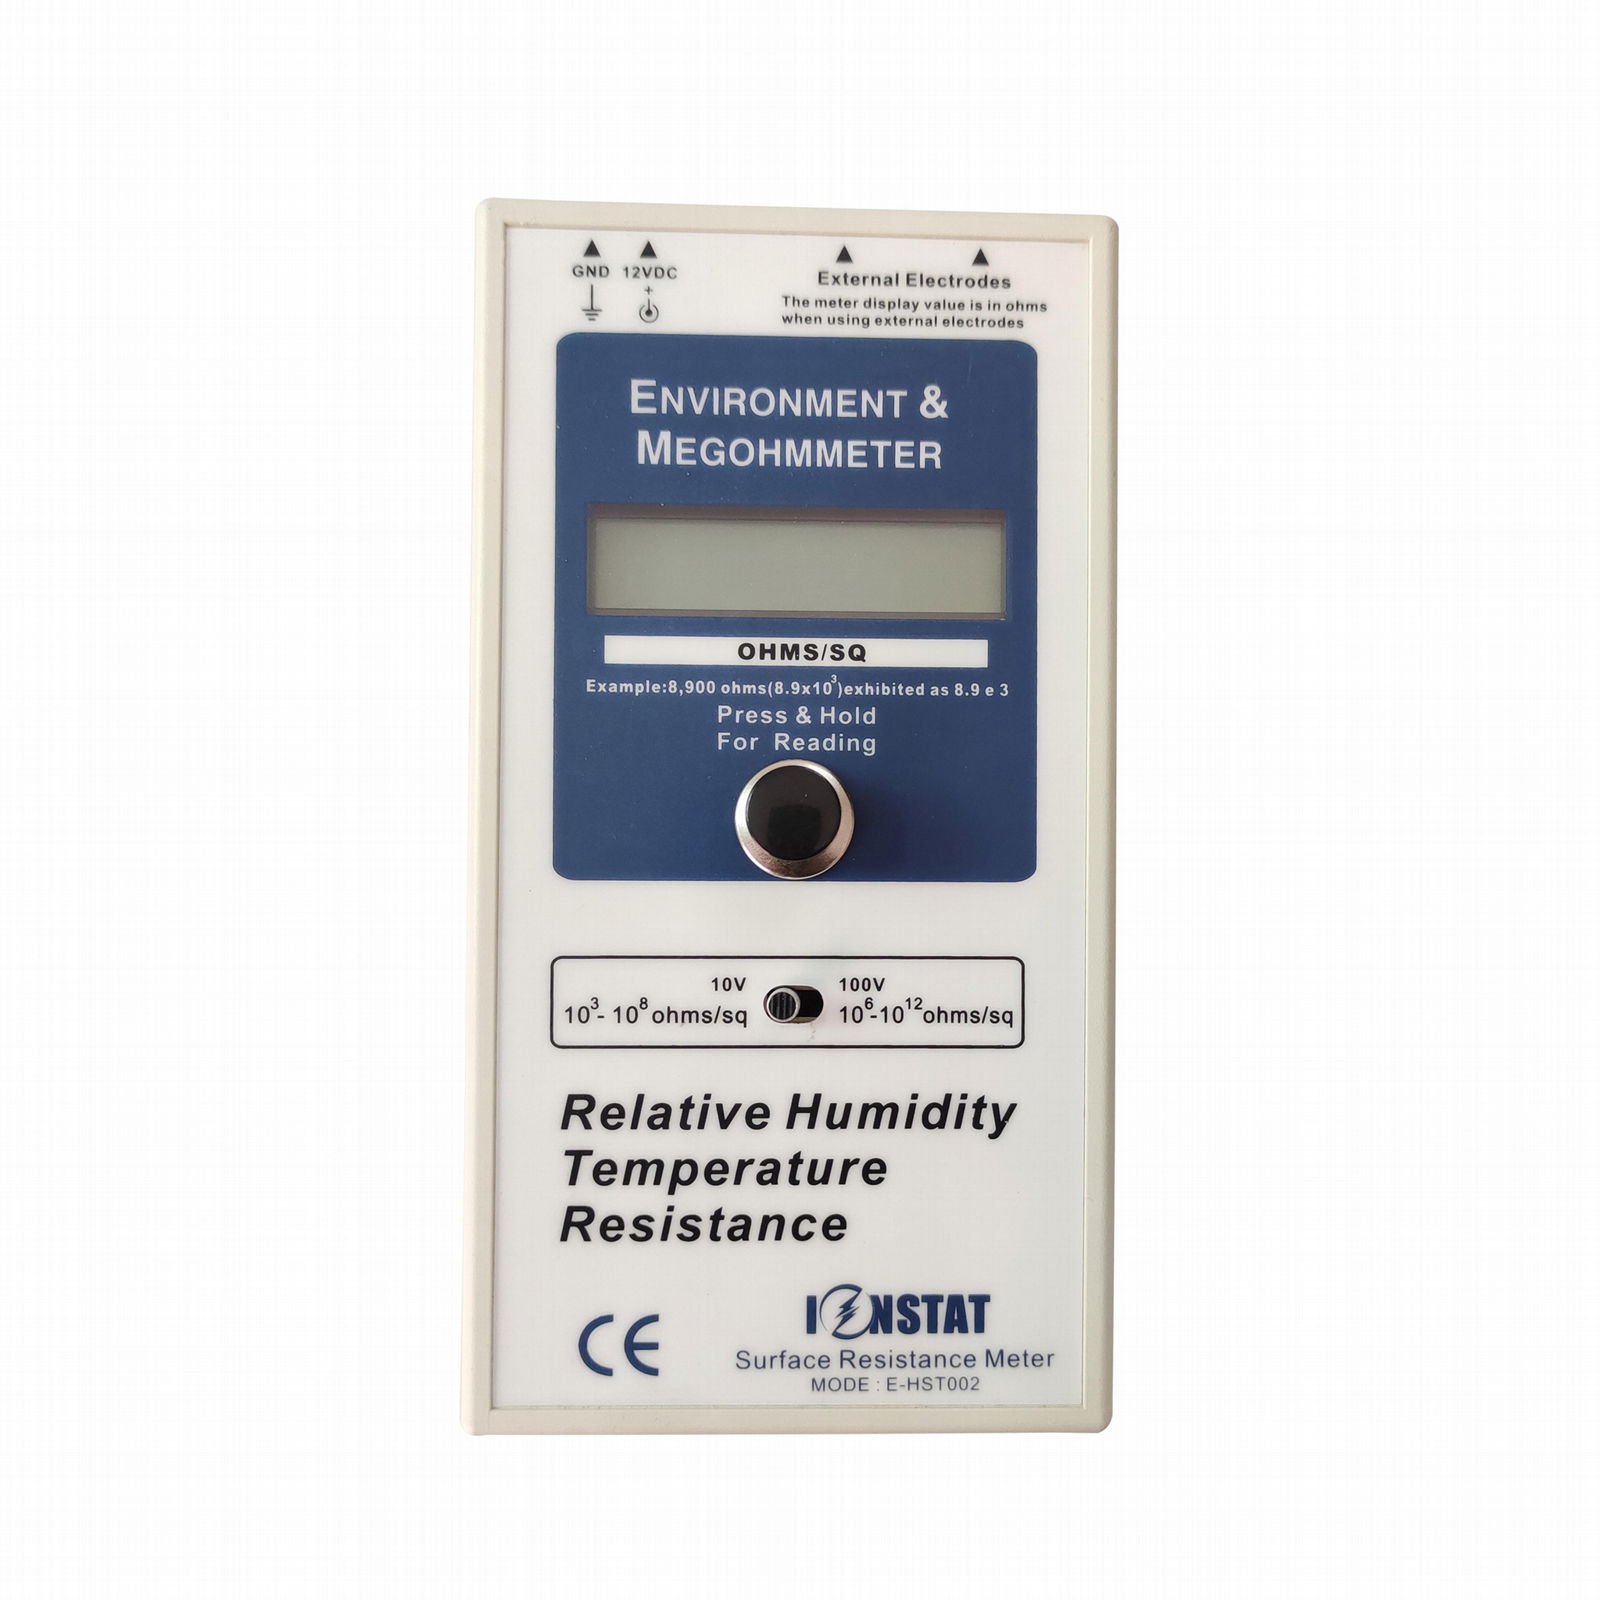 ACL800 SJC030B Environment & Megohm Surface Resistance Meter 3